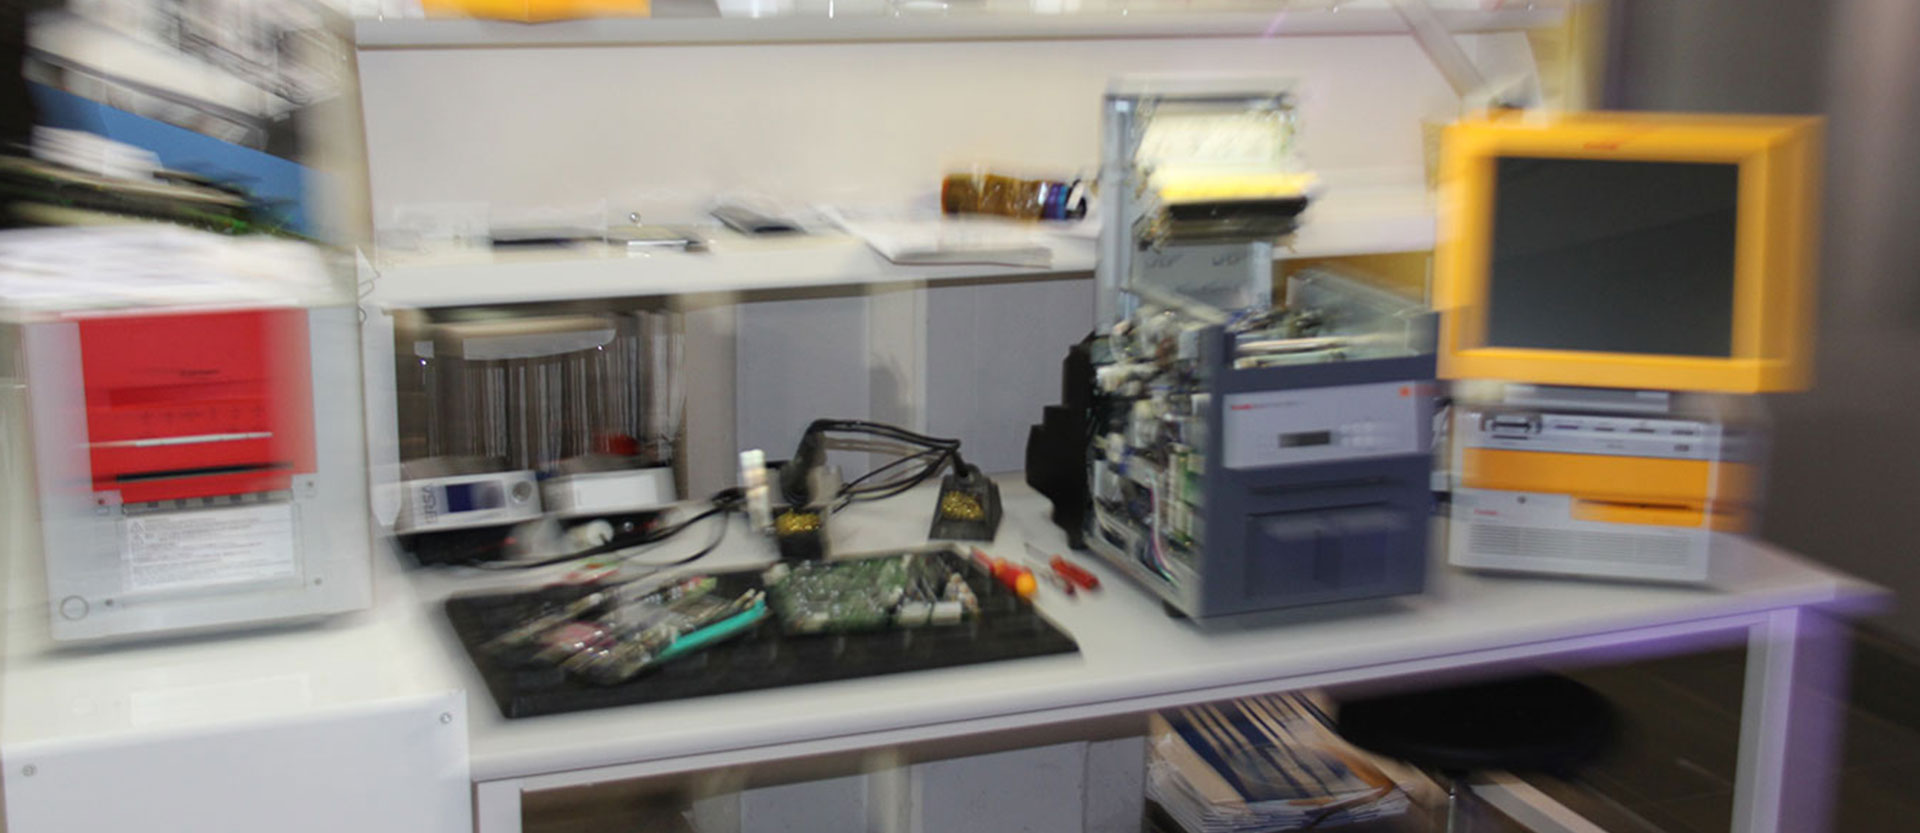 Printsystem und Bauteile in Werkstatt